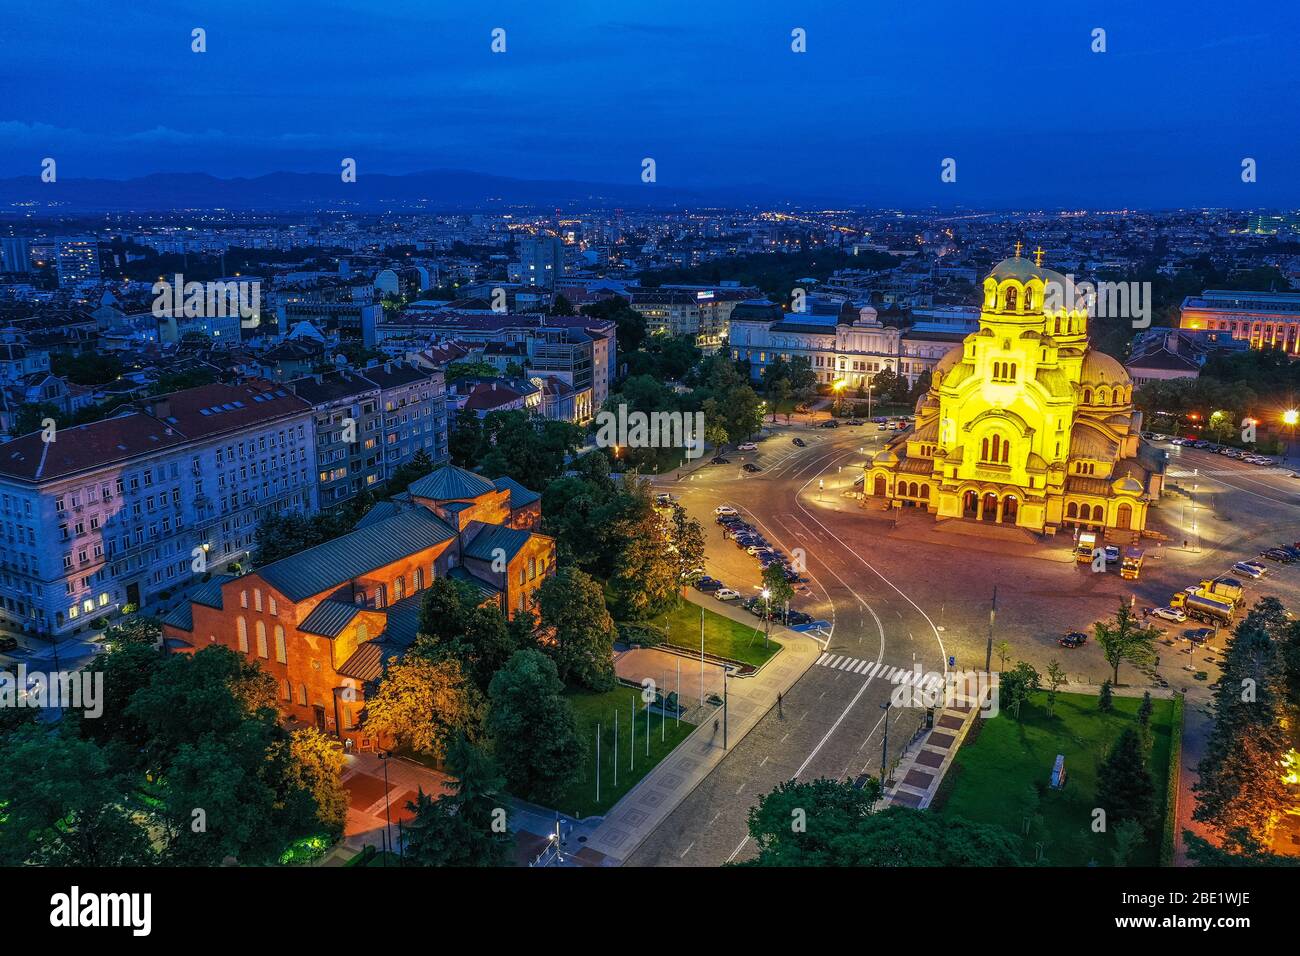 Europa, Bulgaria, Sofía, Alexander Nevsky Catedral ortodoxa rusa, vista aérea Foto de stock